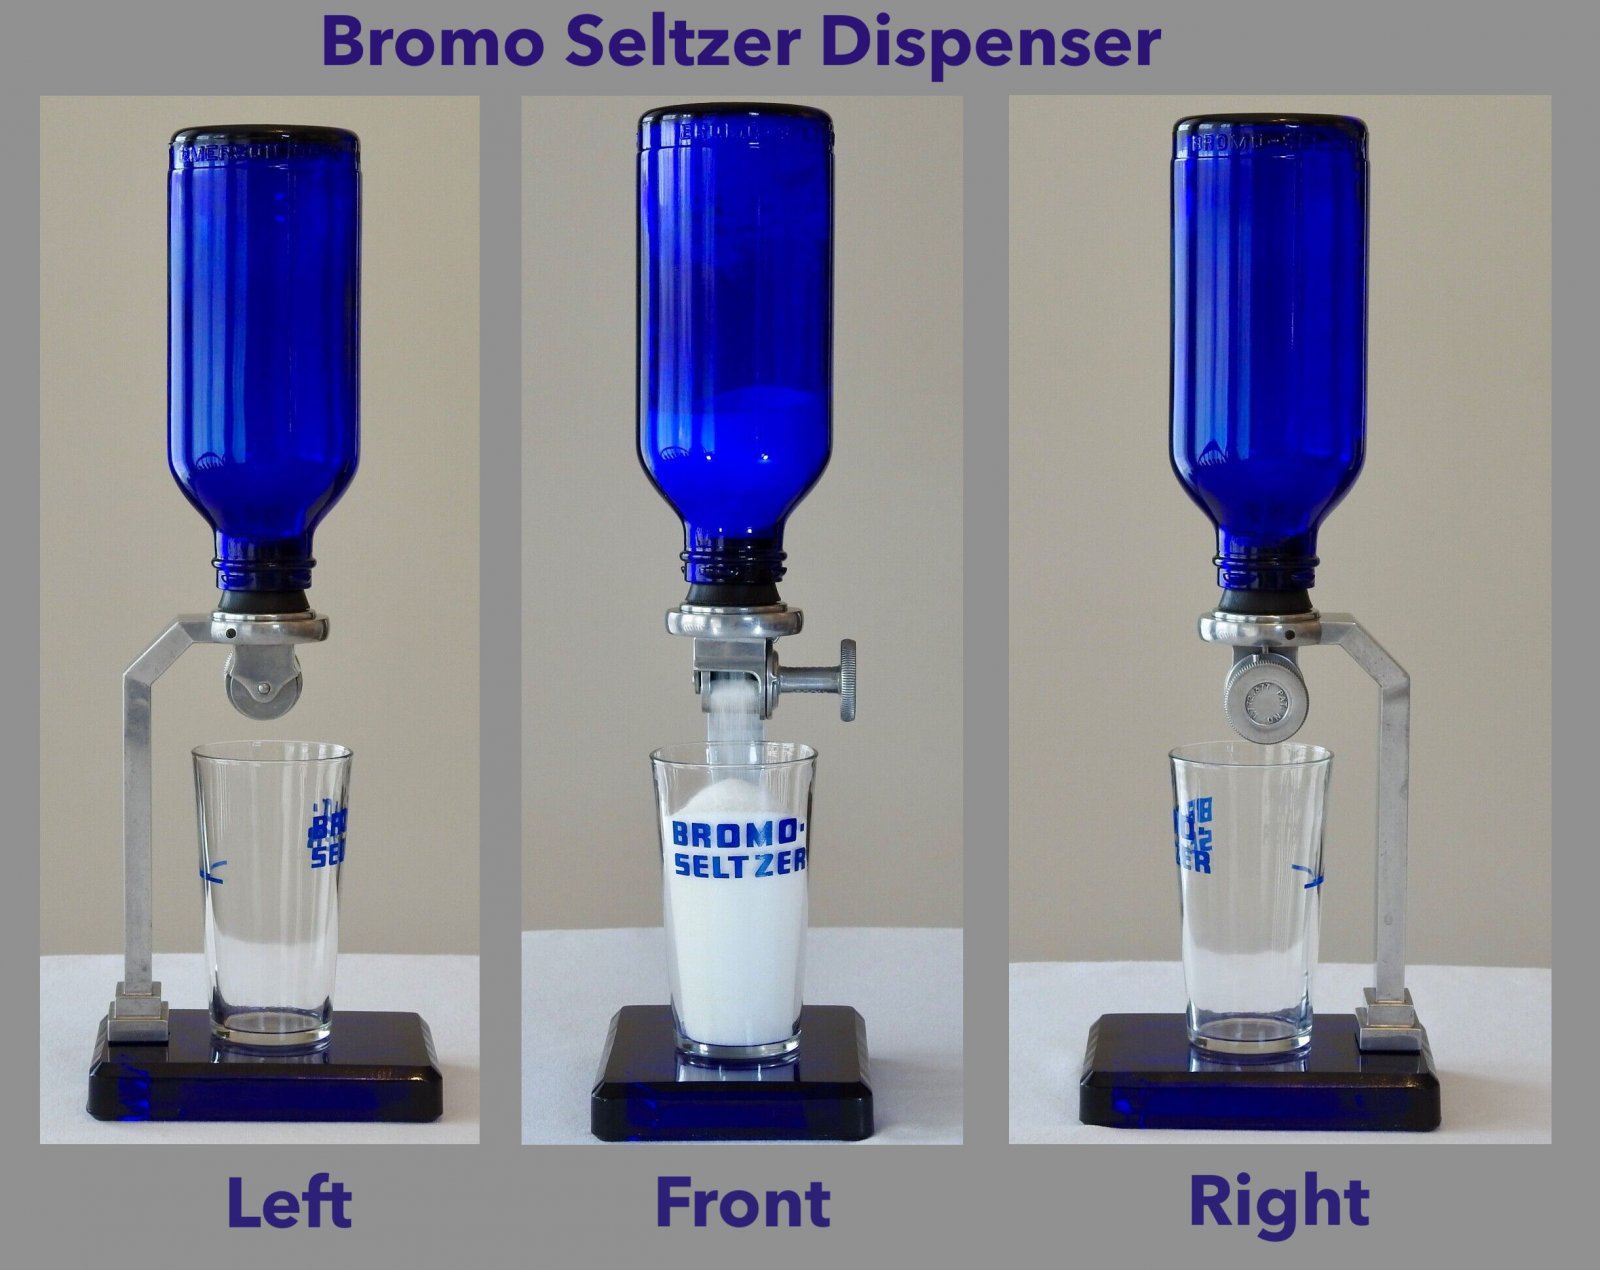 Bromo_Seltzer_Dispenser_Overview.jpeg